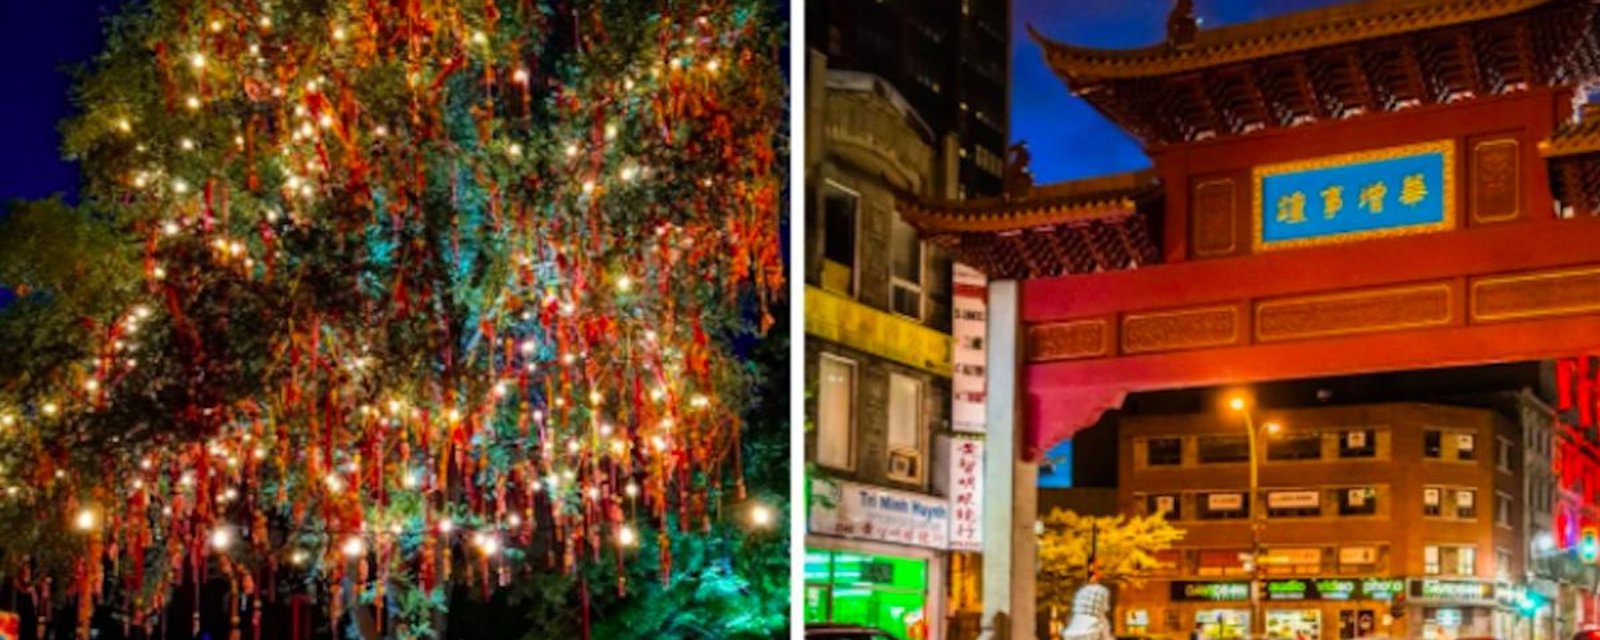 Une bonne option pour un rendez-vous romantique: le marché de nuit asiatique  à Montréal 